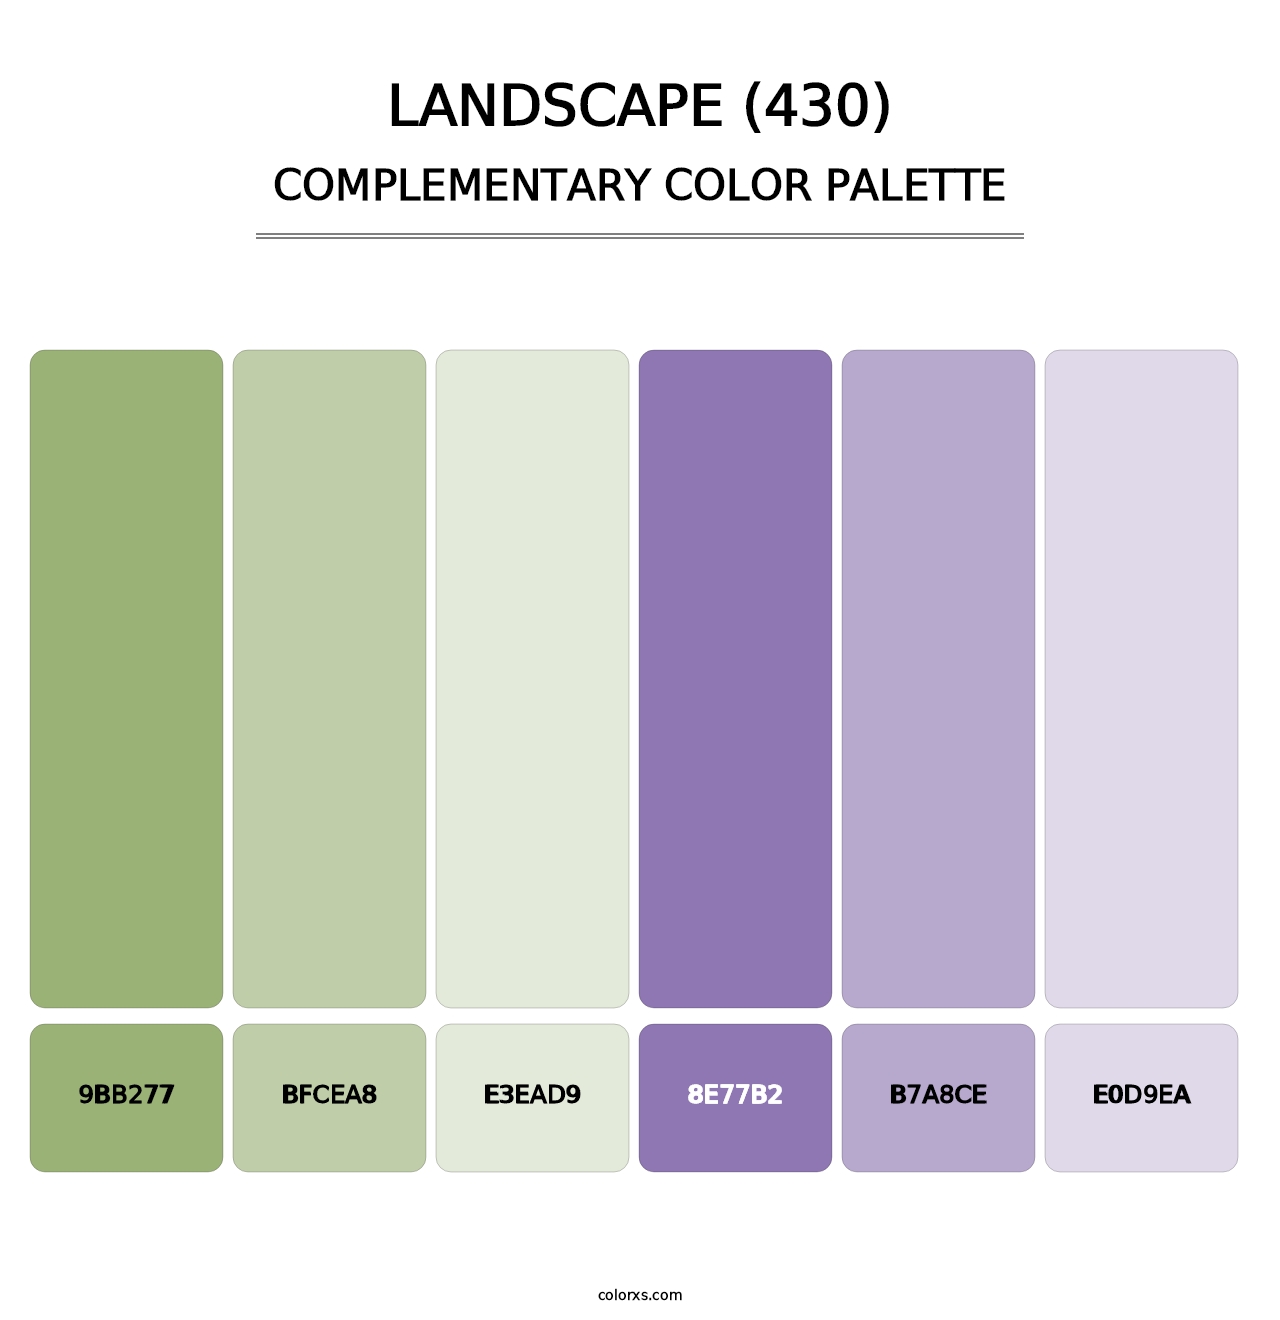 Landscape (430) - Complementary Color Palette